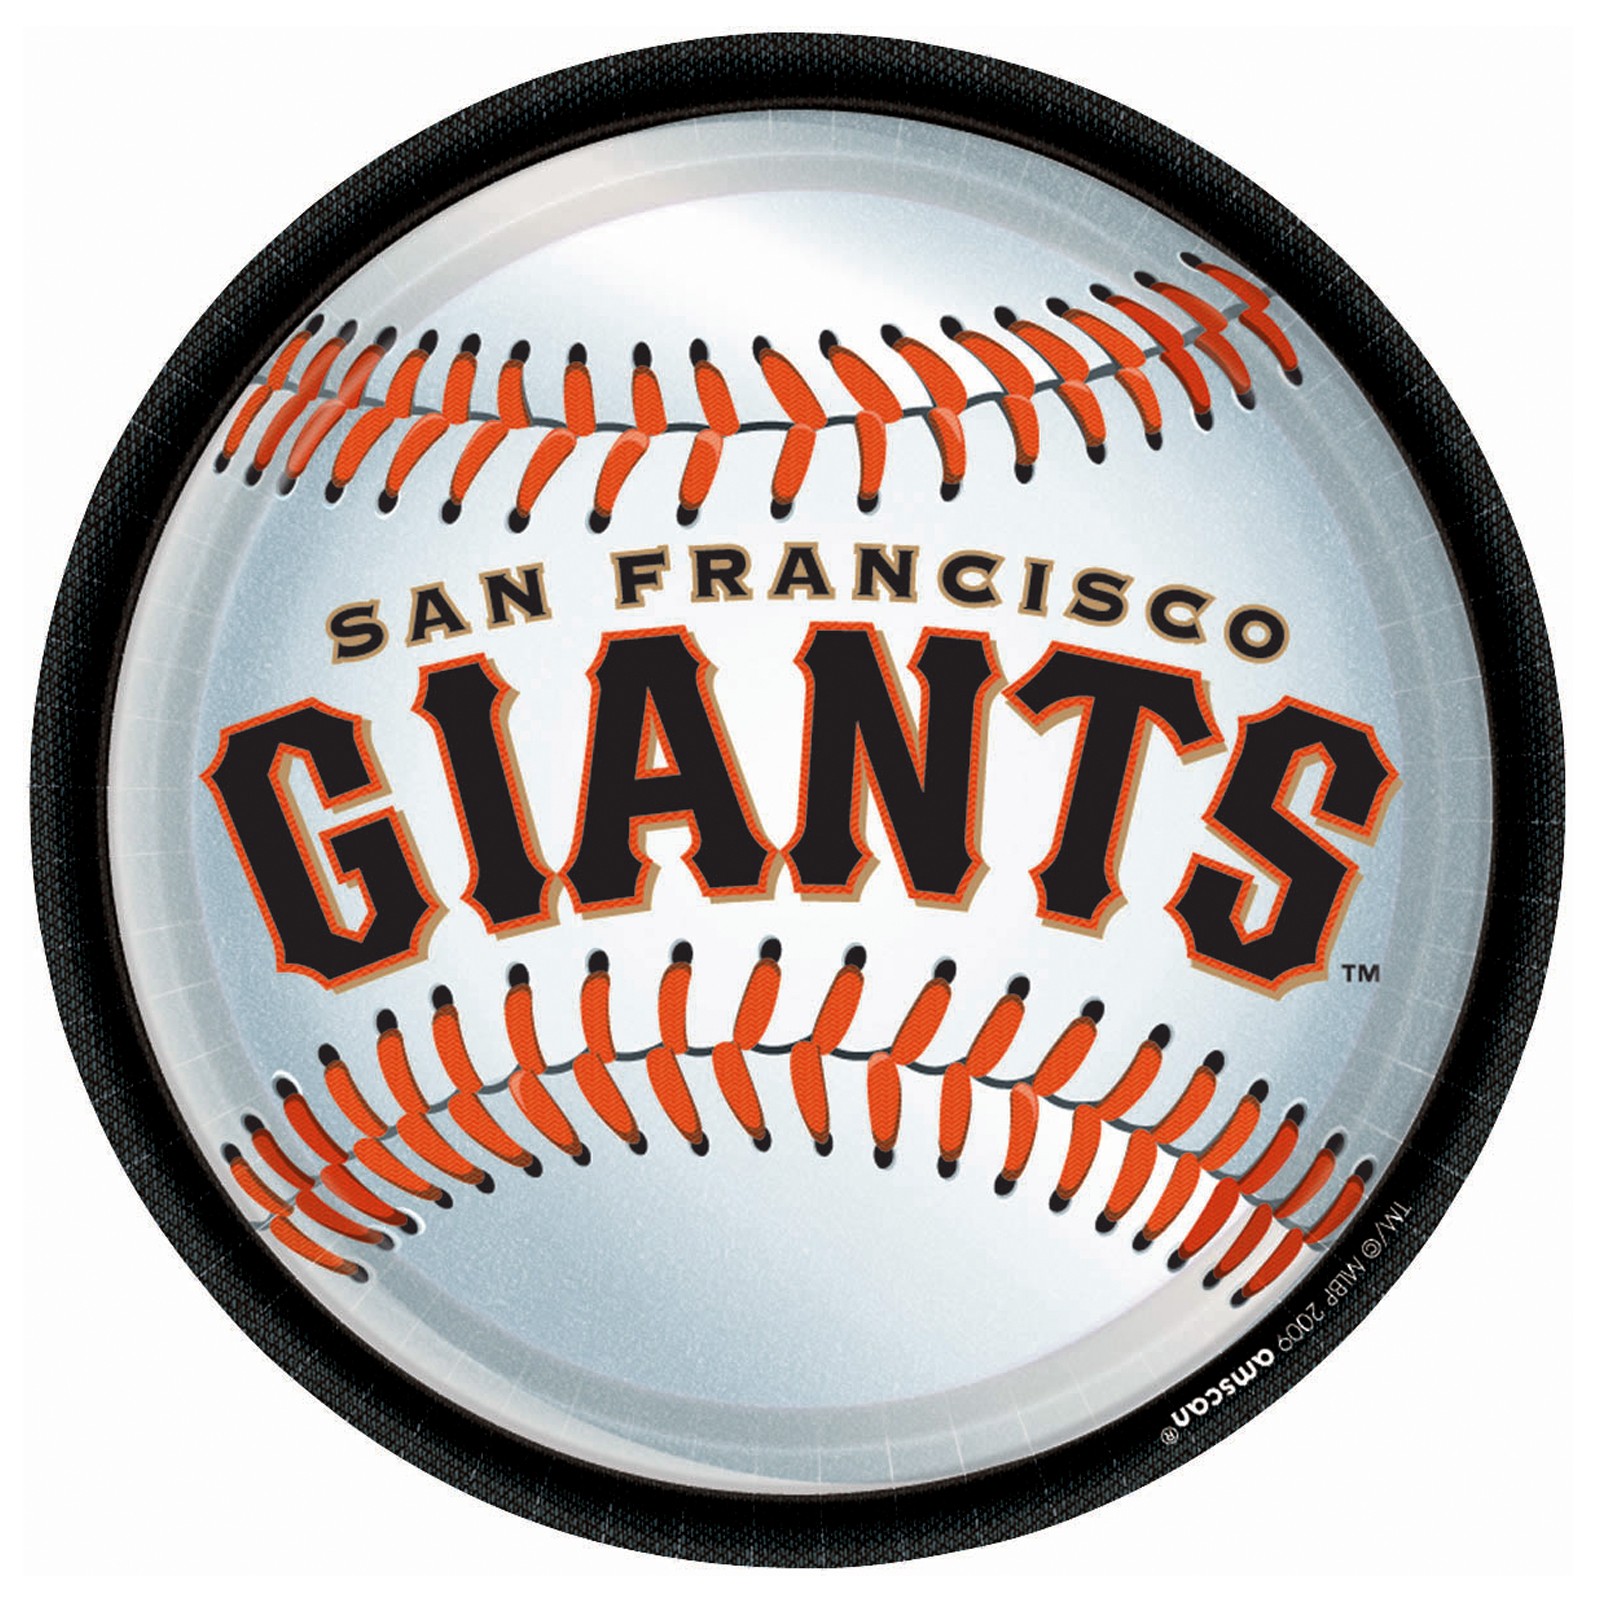 San Francisco Giants wallpaper, Sports, HQ San Francisco Giants pictureK Wallpaper 2019